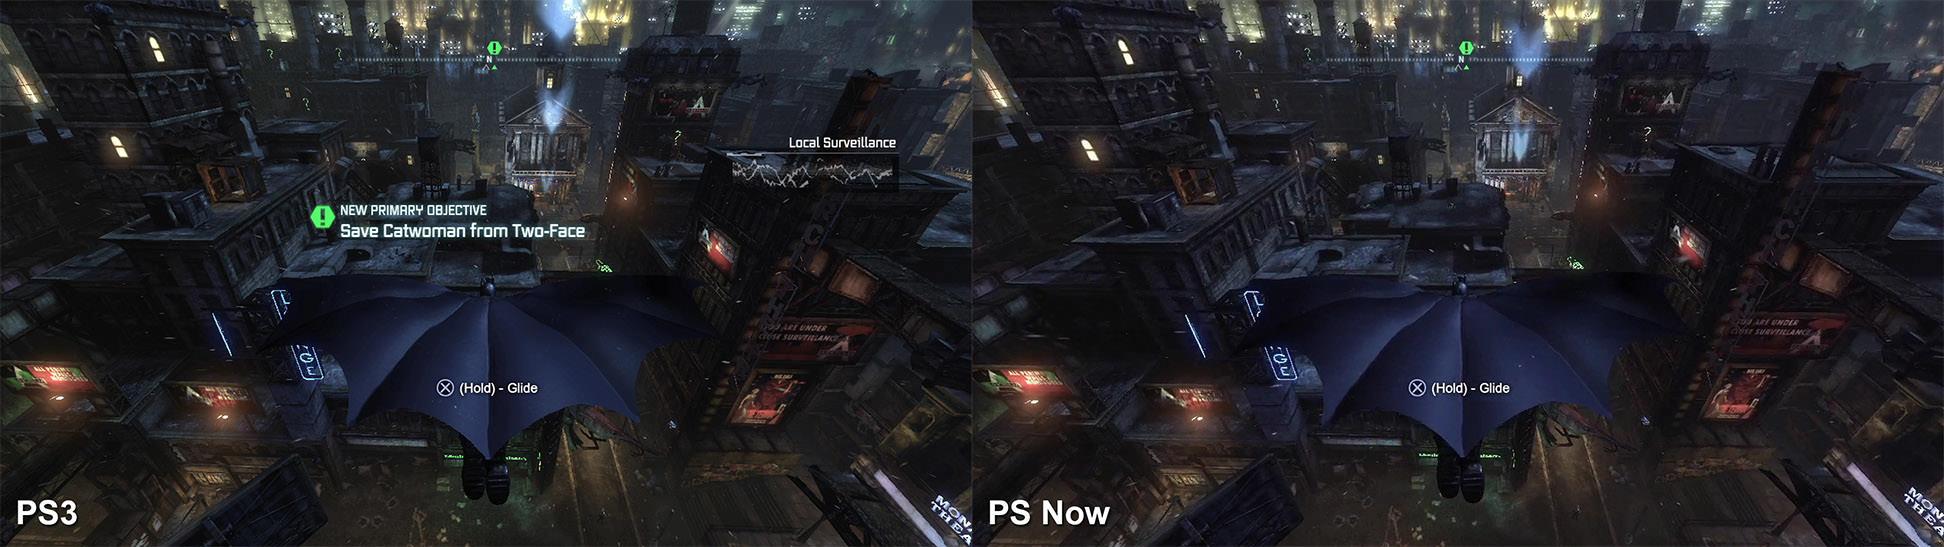 نویزهای تصویری بیشتر در مناطق روشن و با کنتراست بالای تصویر مشخص هستند. مناطق تاریک‌تر به پنهان کردن تصاویر کم‌کیفیت‌تر PlayStation Now کمک می‌کنند. به همین دلیل بازی Batman: Arkham City به خوبی روی این سرویس کار می‌کند. برای مشاهده‌ی سایز بزرگ‌تر روی تصویر کلیک کنید.